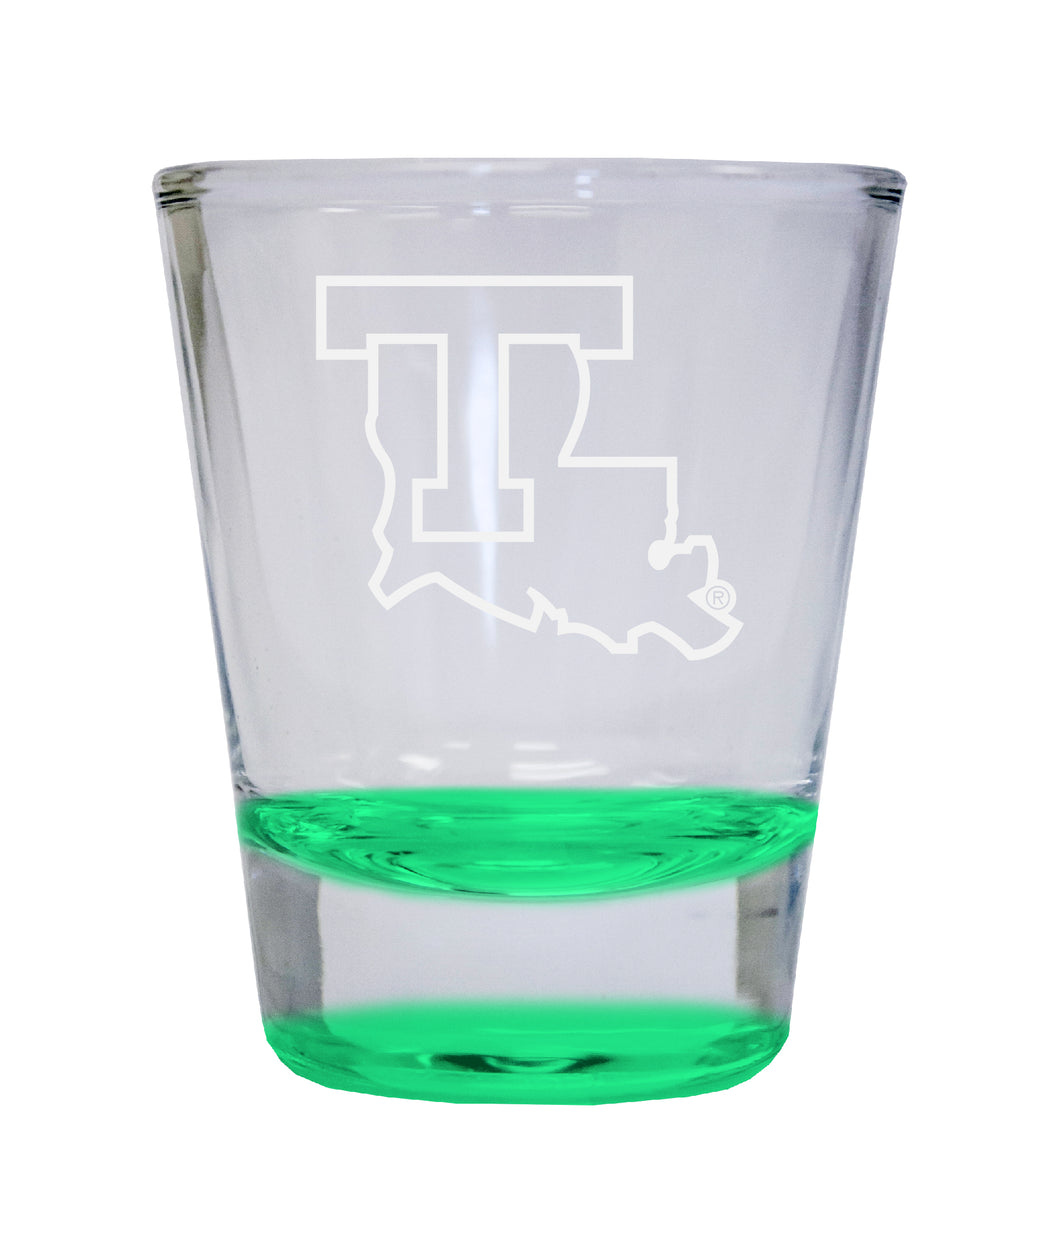 NCAA Louisiana Tech Bulldogs Collector's 2oz Laser-Engraved Spirit Shot Glass Green